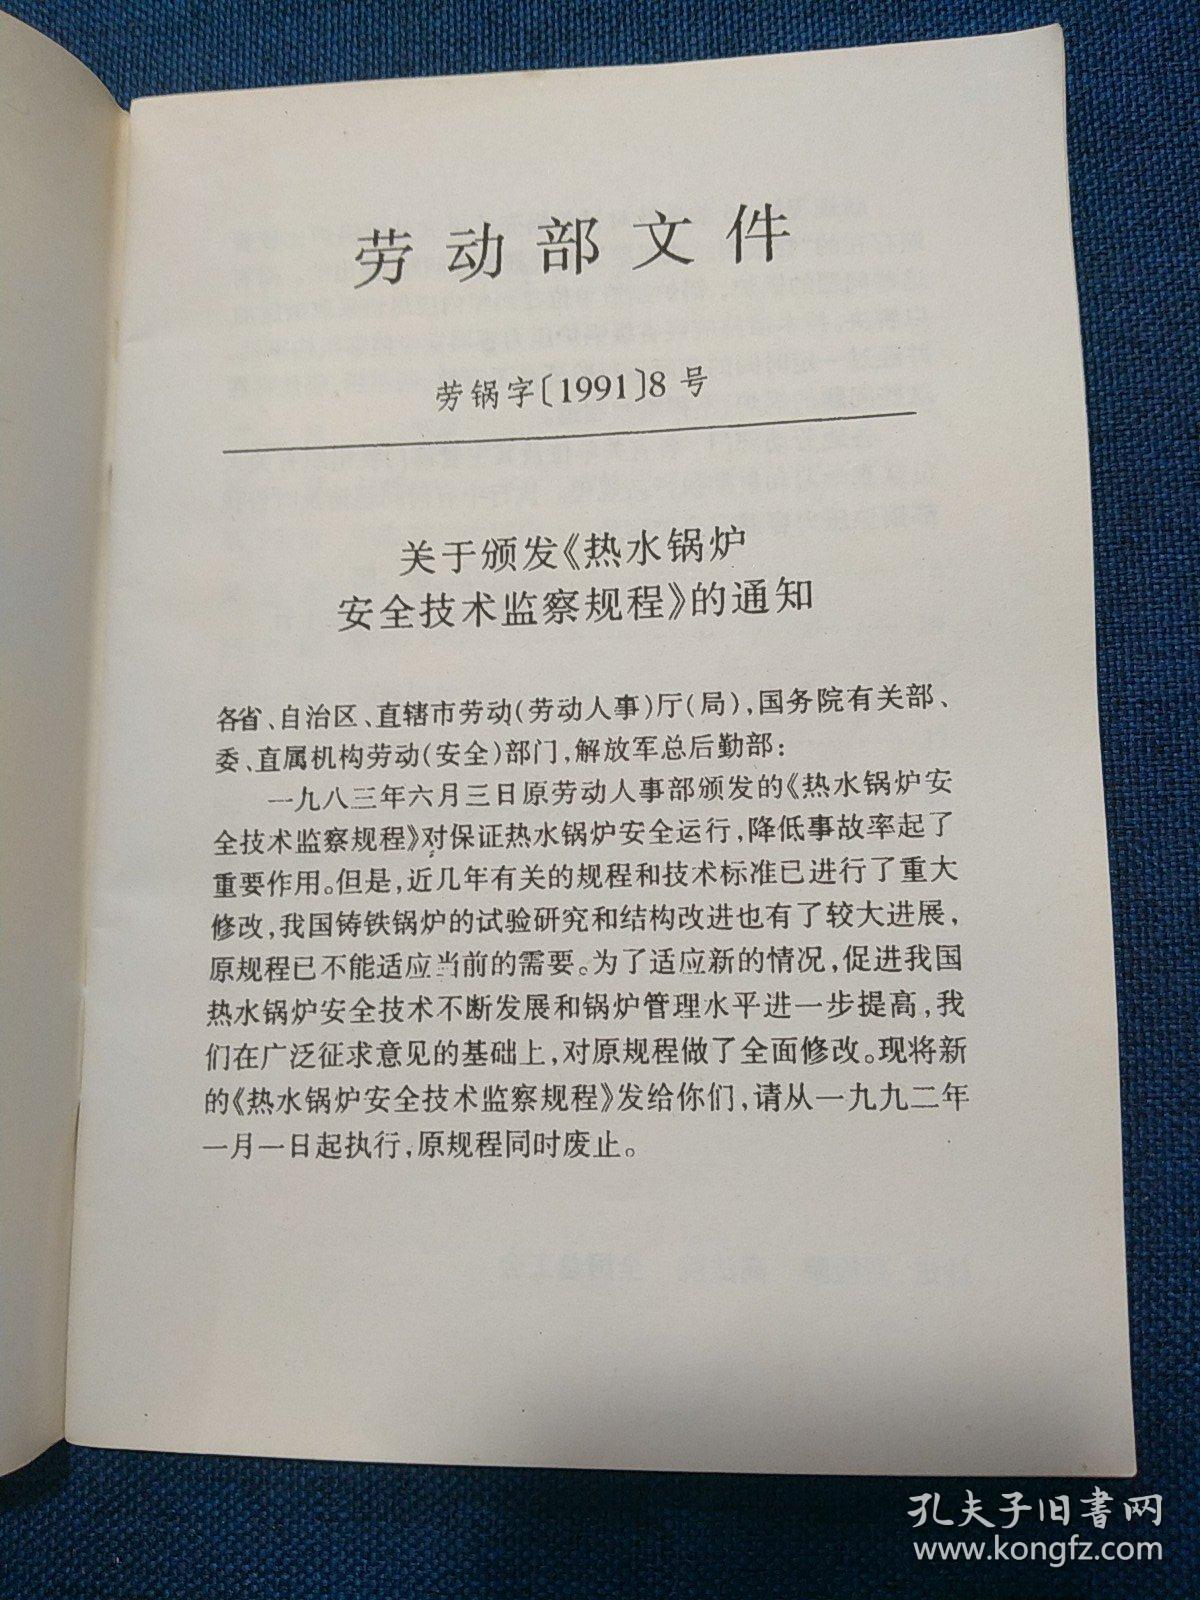 中华人民共和国劳动部
热水锅炉安全技术监察规程
(1997年修订版)